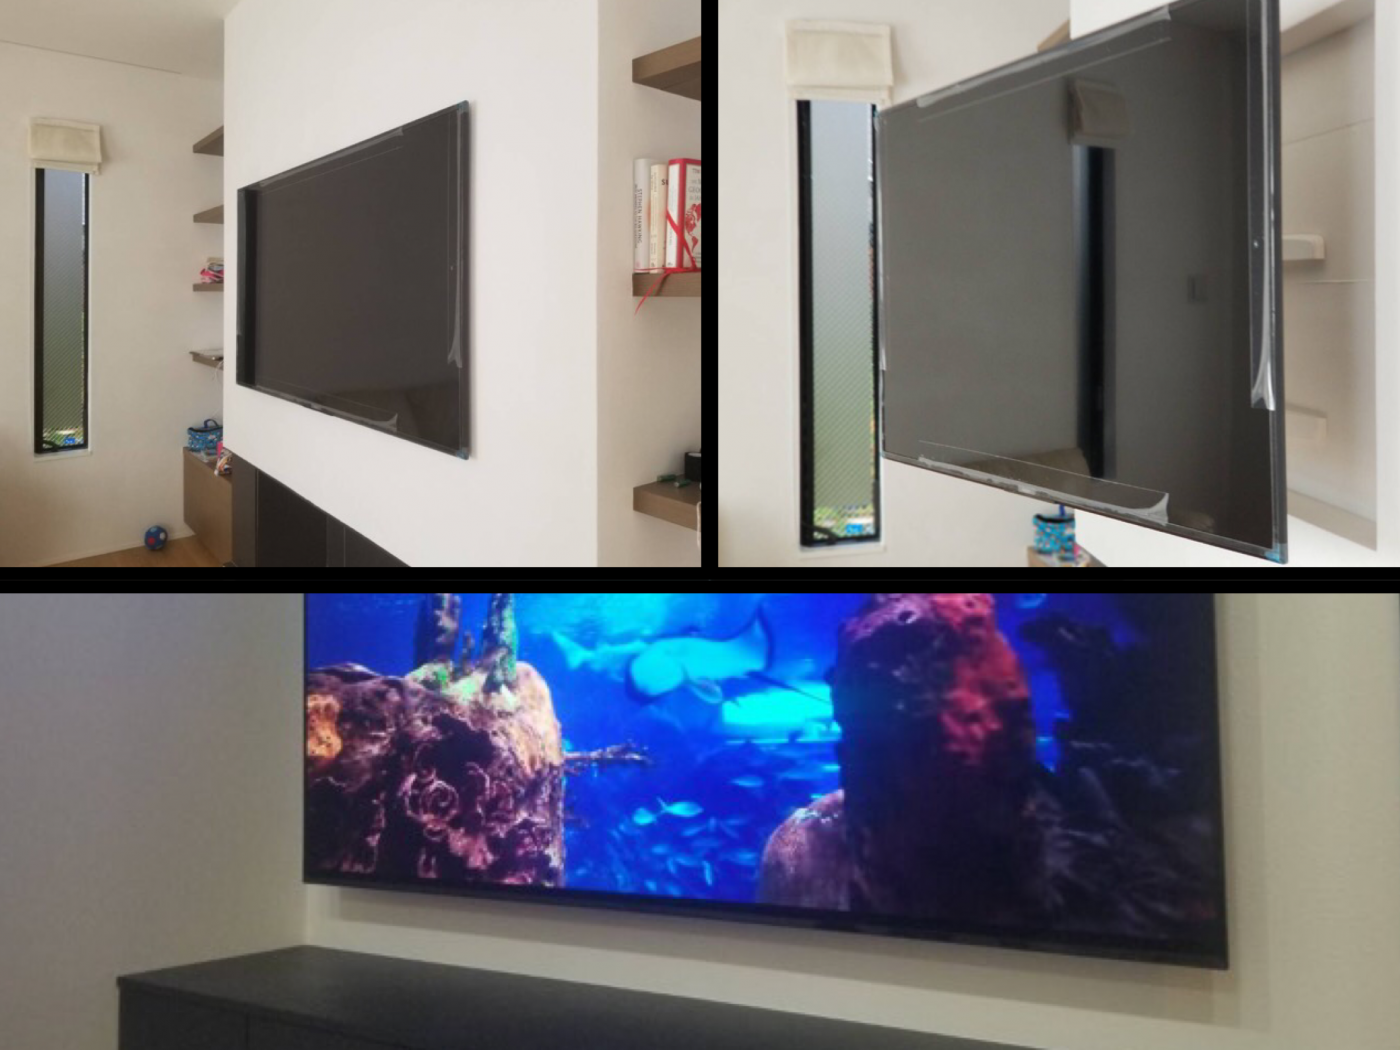 スタイリッシュ な壁掛けテレビと そうでない壁掛けテレビ の違いには業者選びが重要です 東京 神奈川のテレビ壁掛け 工事 配線工事 アンテナ工事 ライフプラス